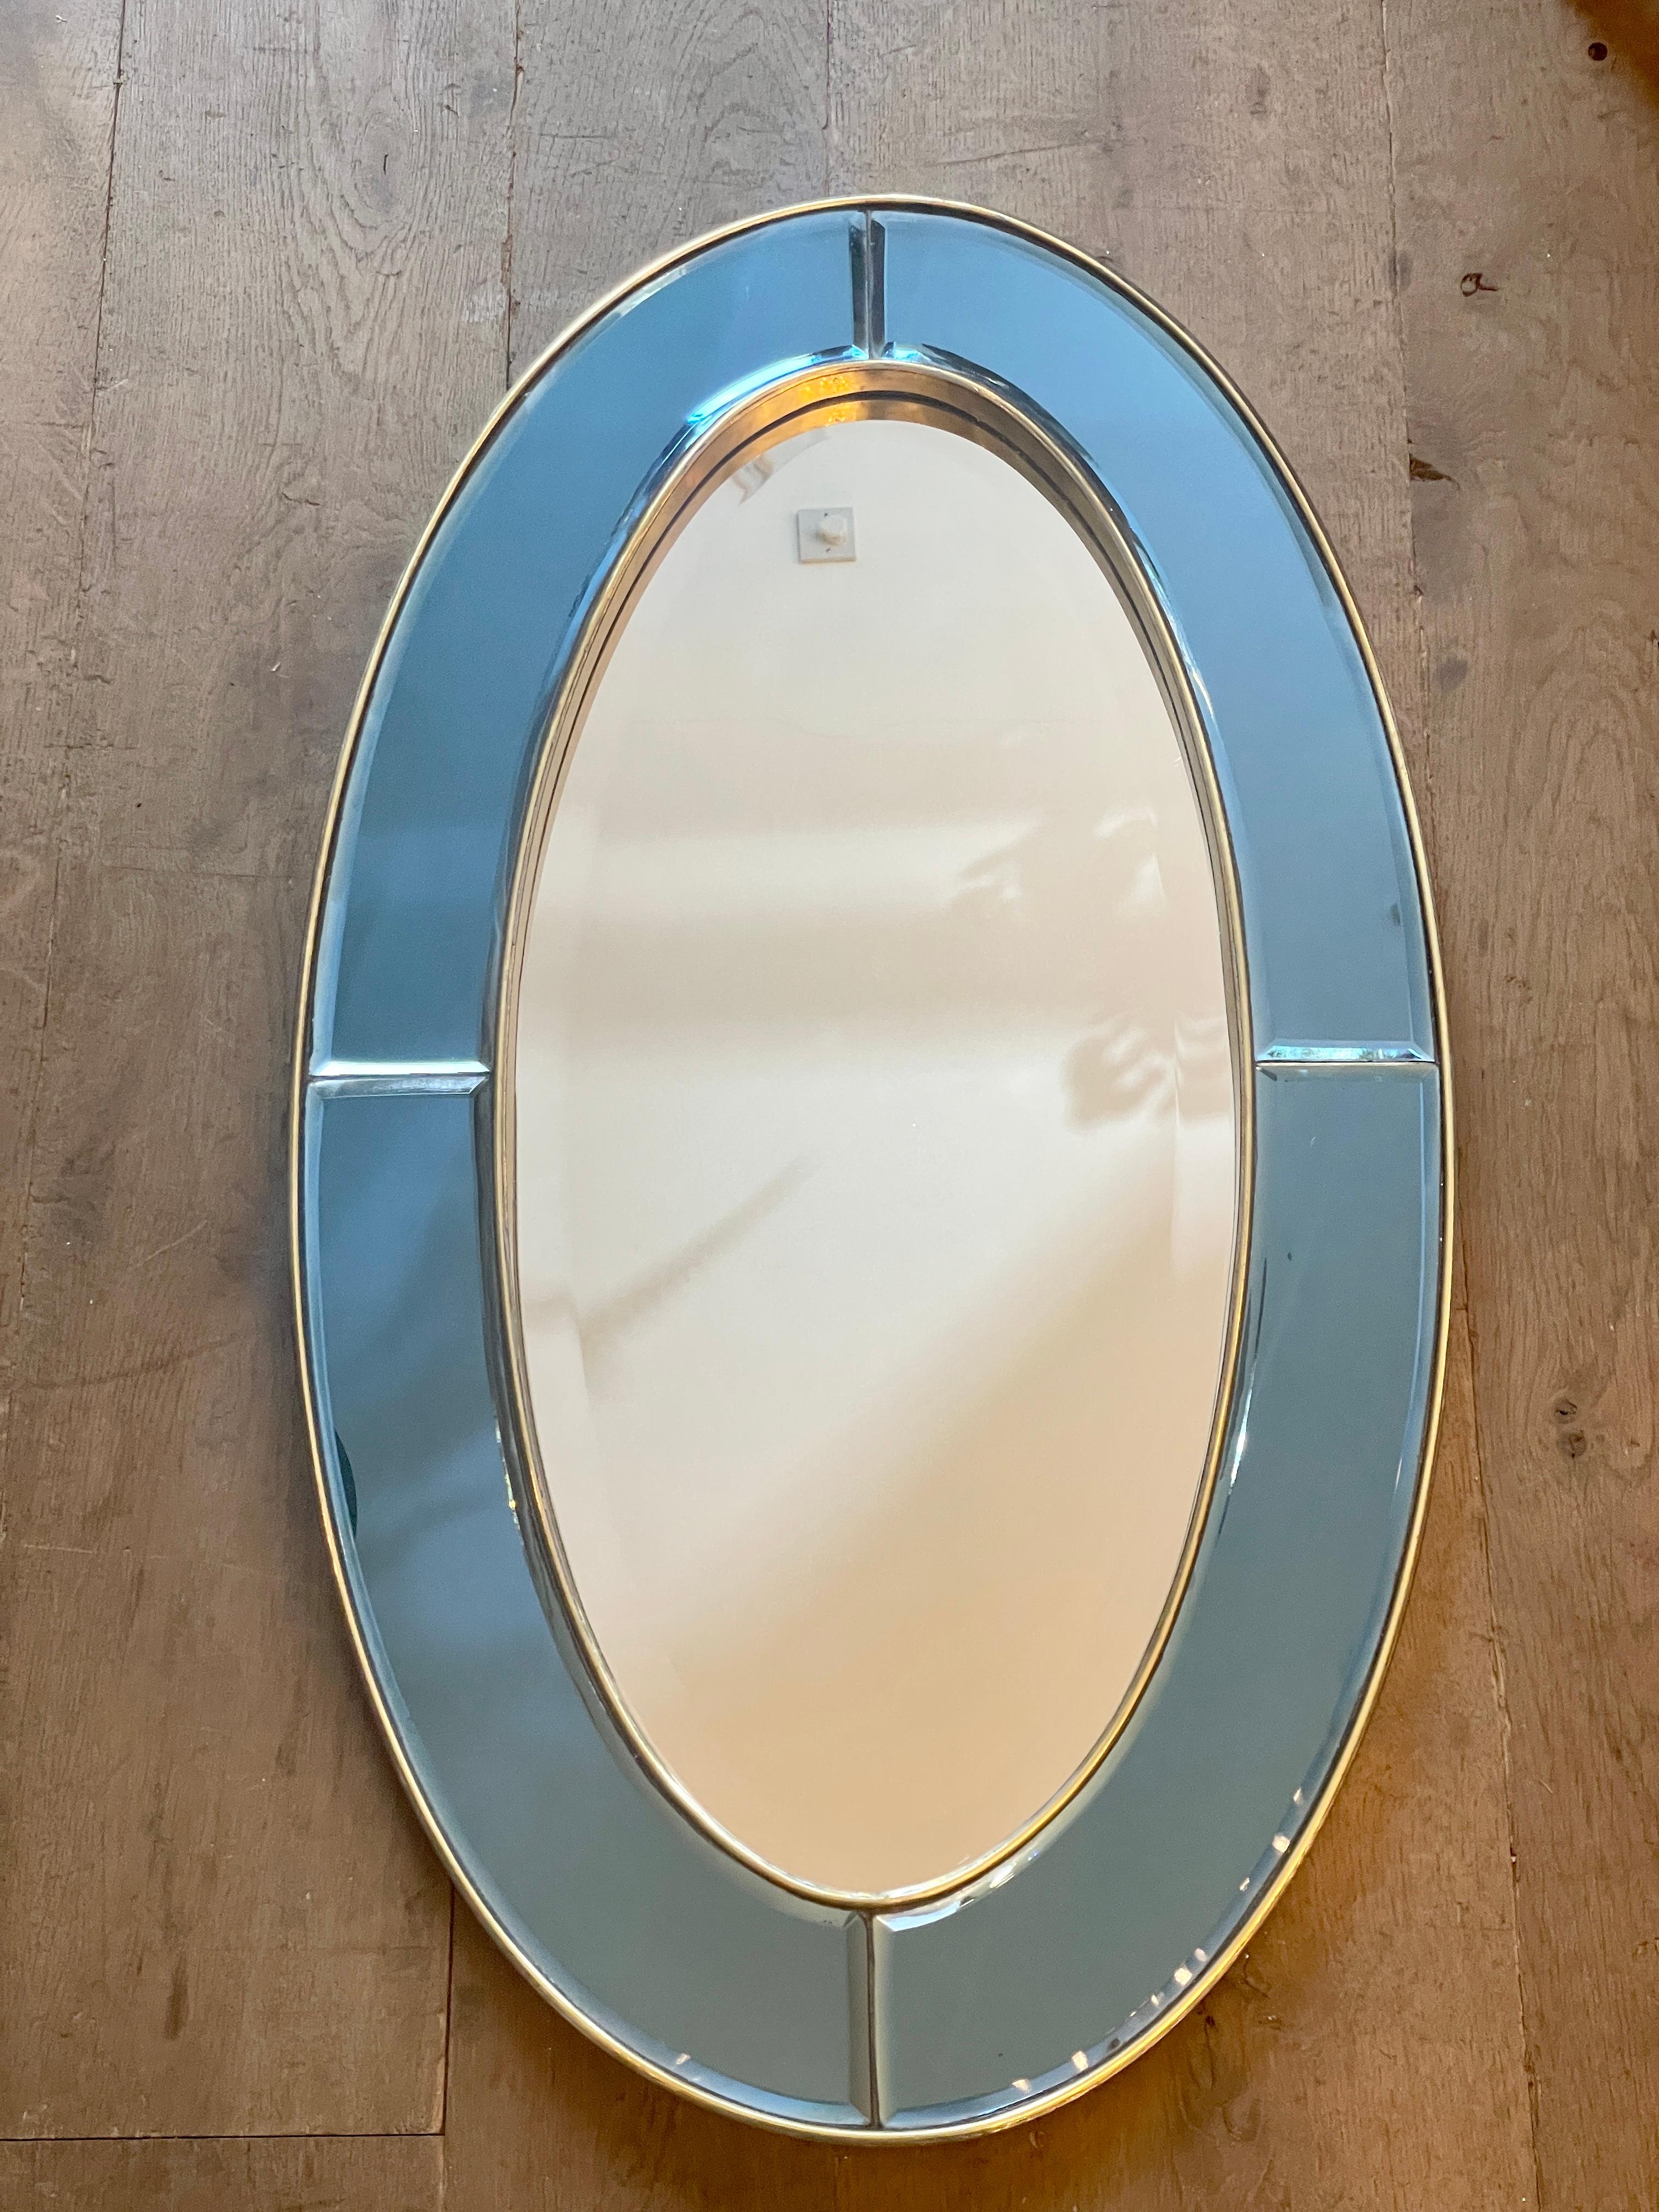 Un miroir ovale encadré de laiton avec une bordure de miroir bleu à panneaux, tous avec des bords biseautés, et un intérieur de miroir biseauté clair. Légèrement endommagé, avec une belle patine sur le laiton. Tout à fait dans le goût des Italiens